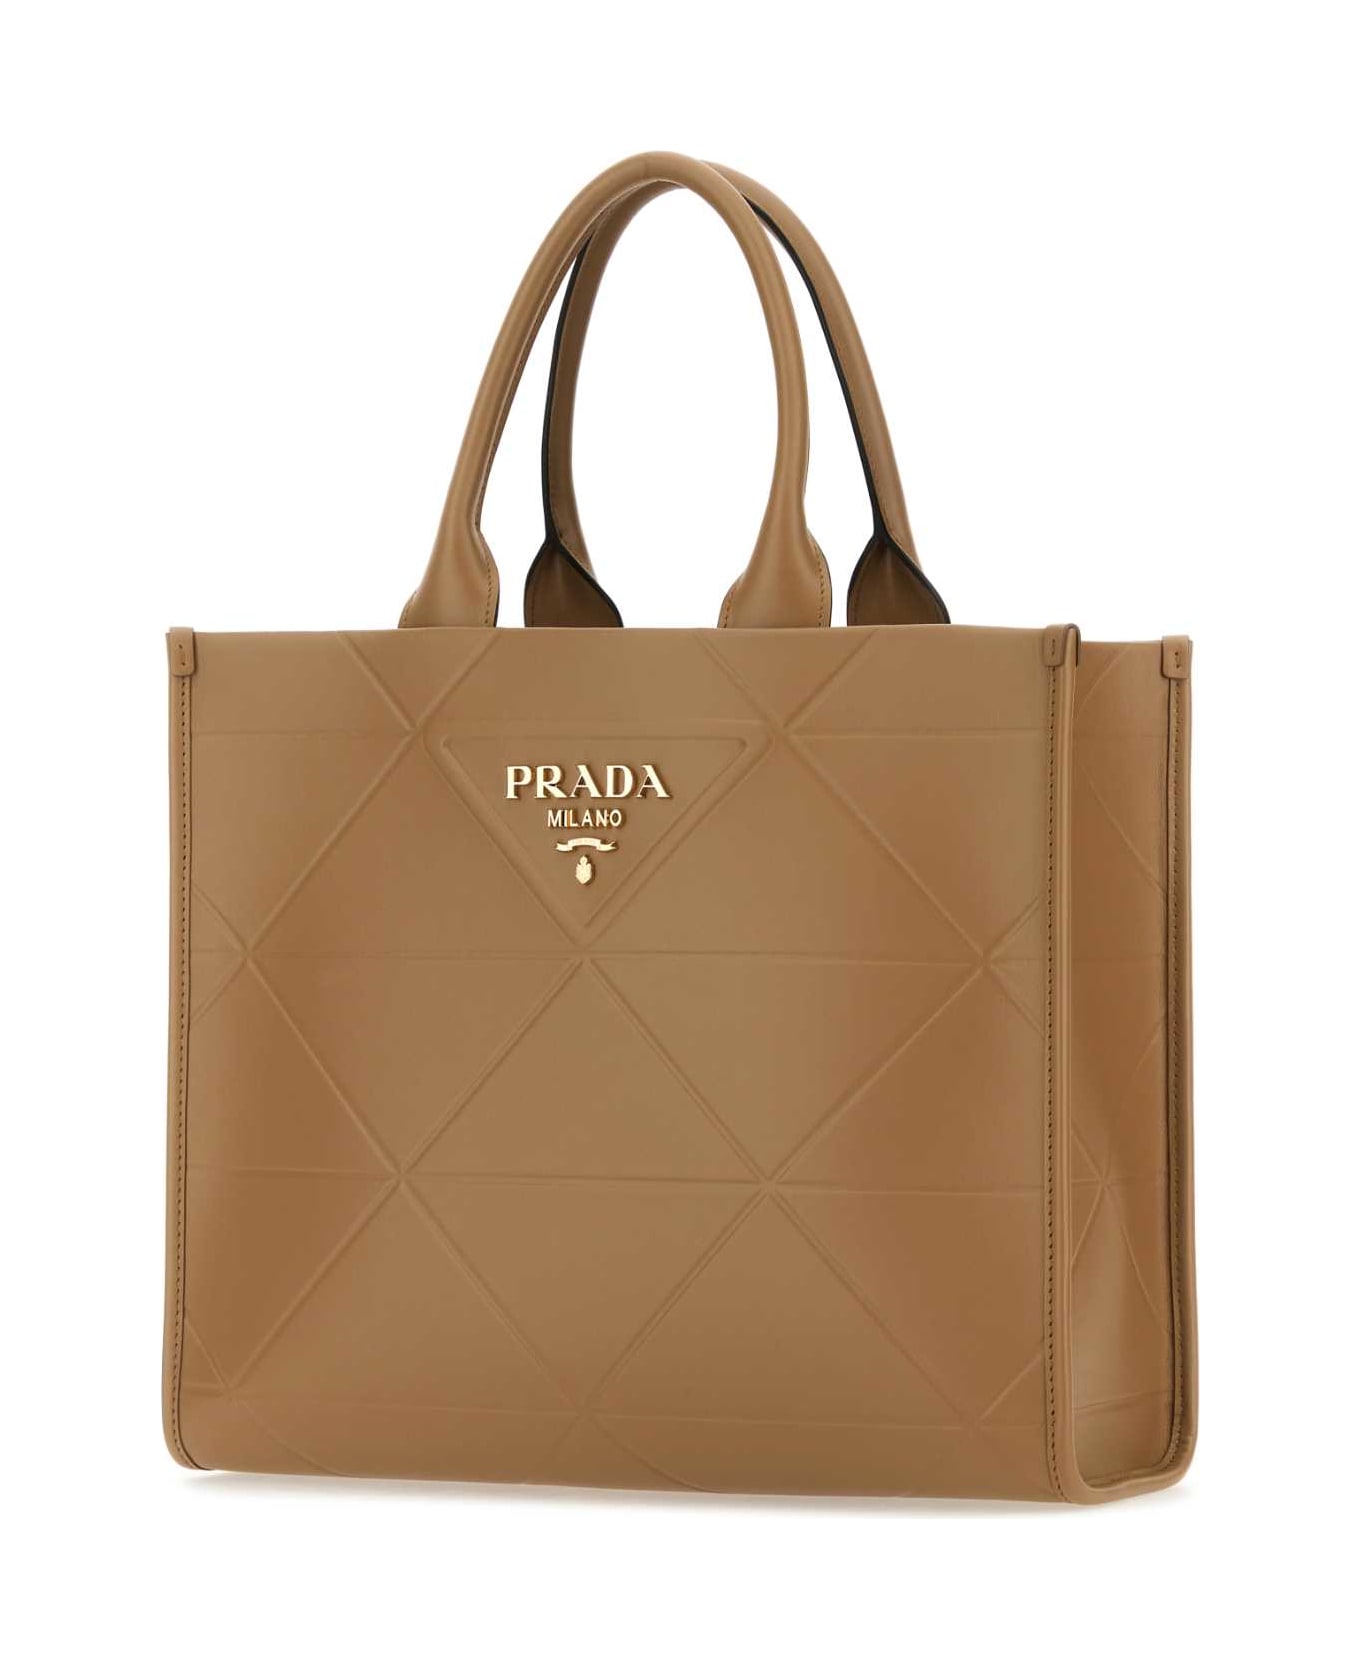 Prada Camel Leather Shopping Bag - CARAMELX